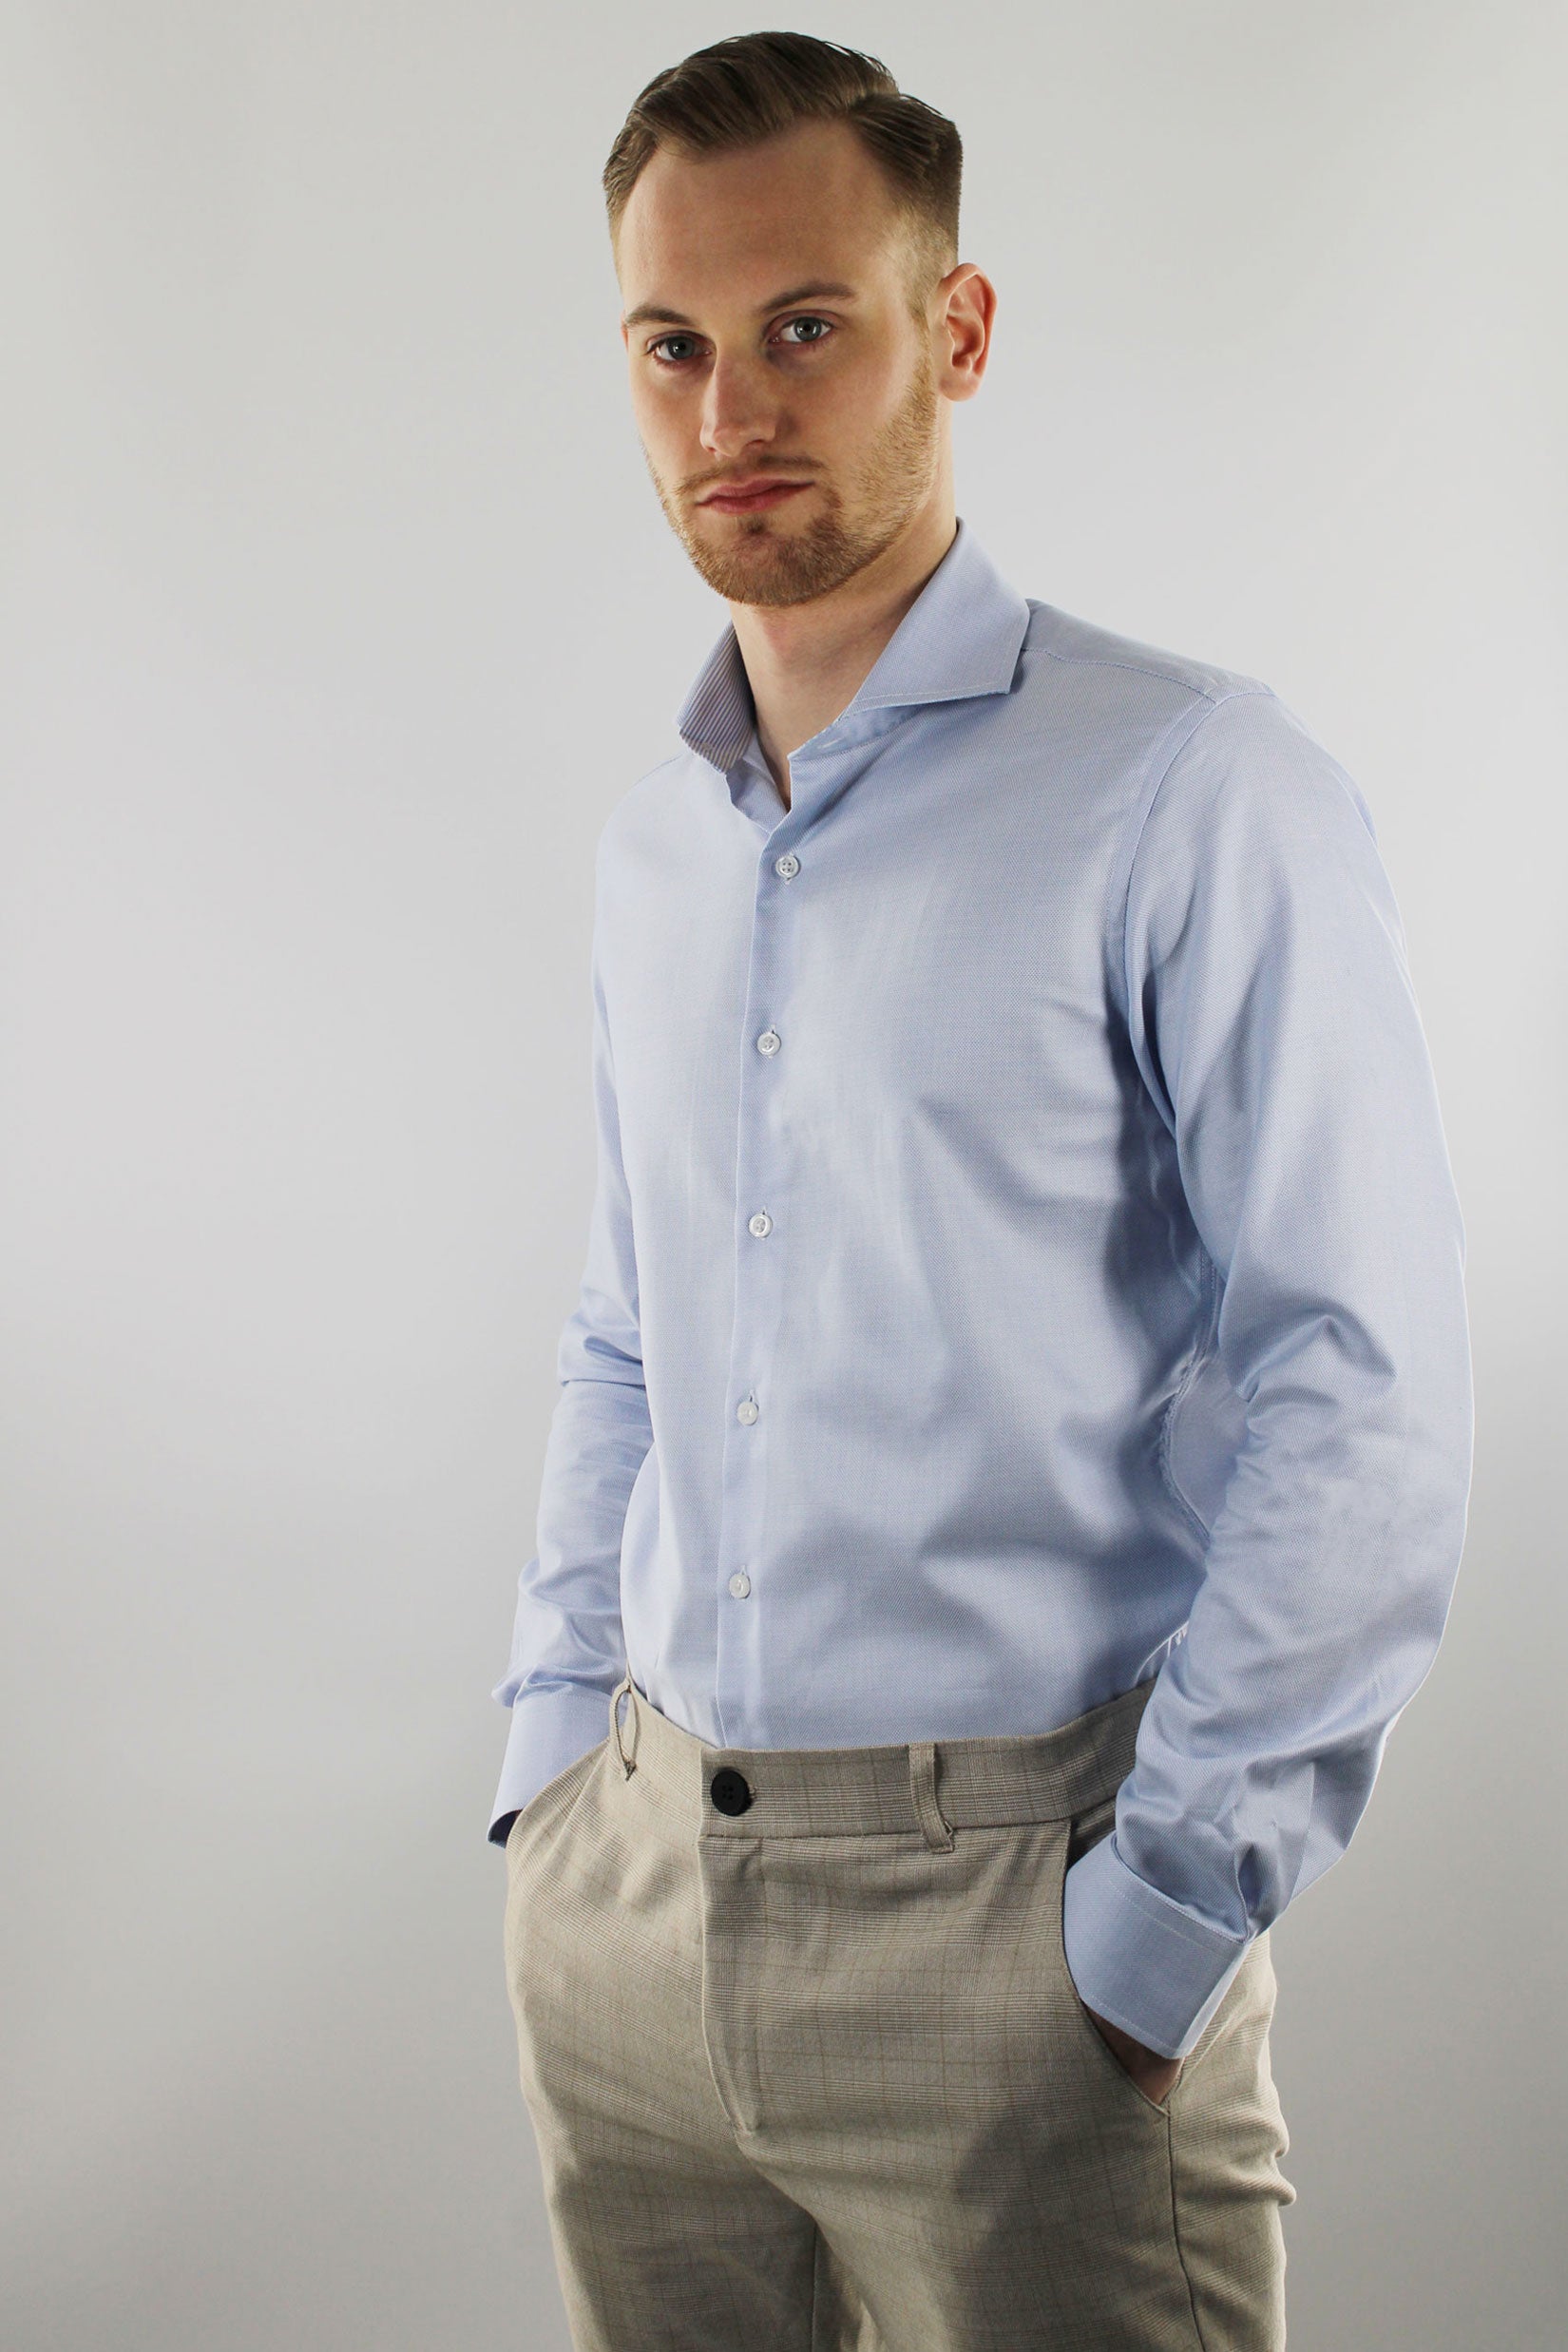 Strijkvrij Overhemd - Platinum Blauw Jacquard - Overhemd - Vercate - Vercate - Overhemden - Strijkvrije overhemden - Heren - herenkleding